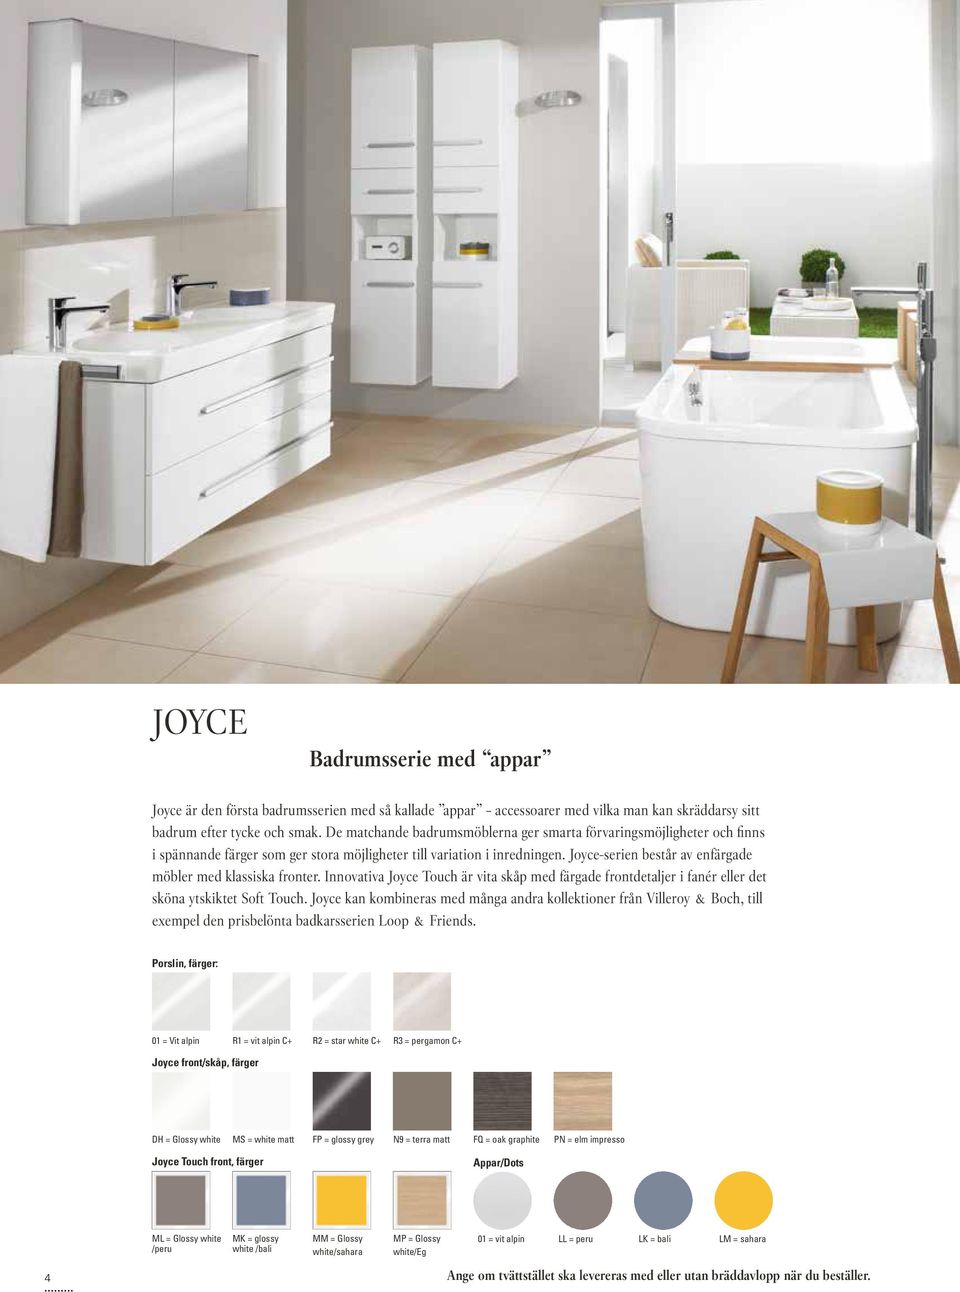 Joyce-serien består av enfärgade möbler med klassiska fronter. Innovativa Joyce Touch är vita skåp med färgade frontdetaljer i fanér eller det sköna ytskiktet Soft Touch.